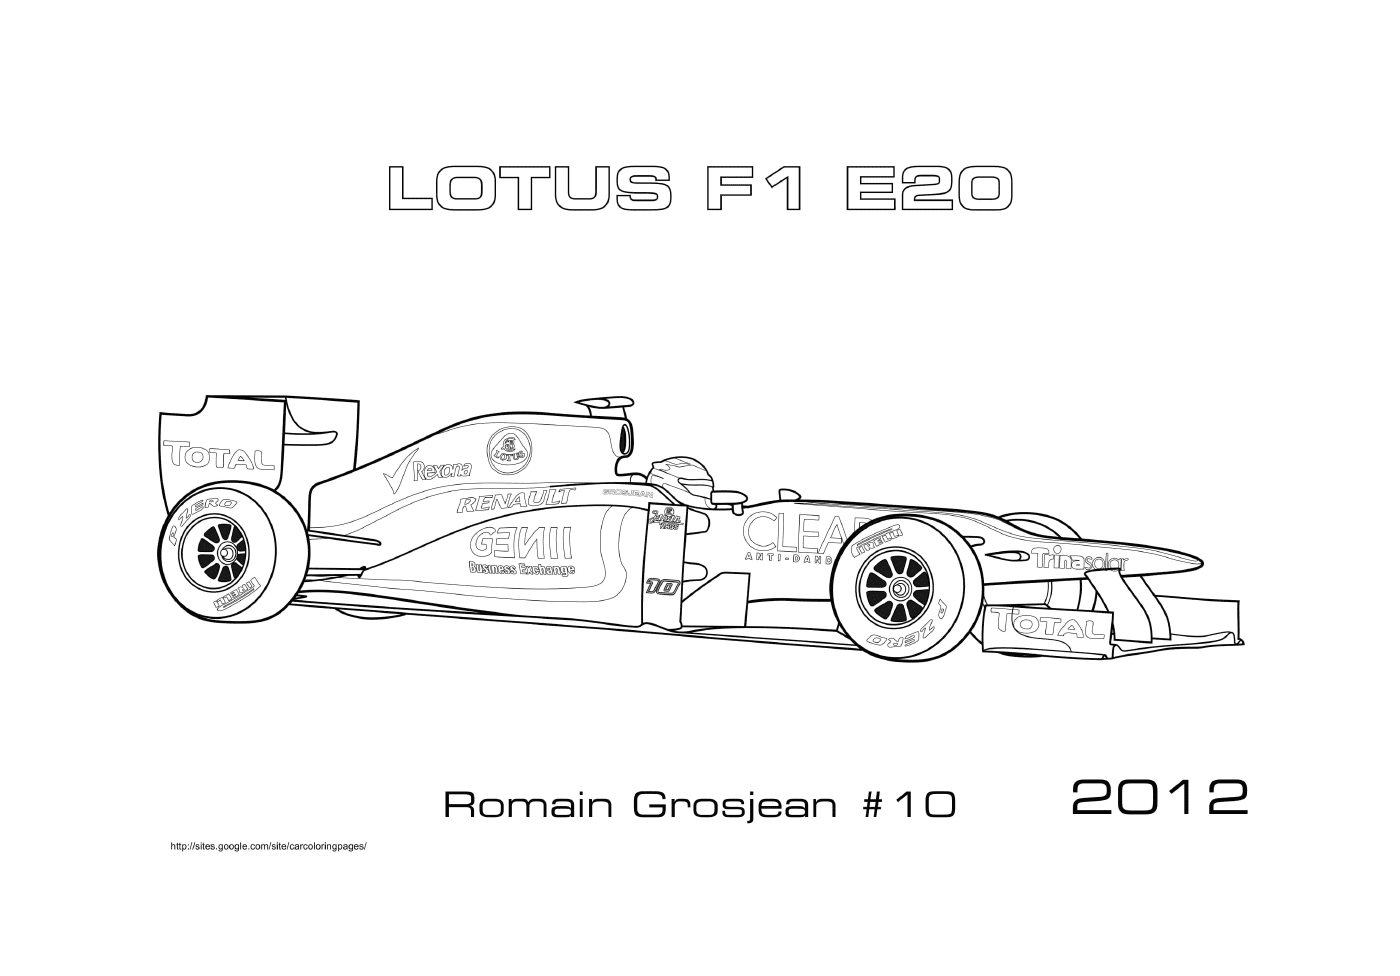   Voiture de course Lotus E20 de Romain Grosjean 